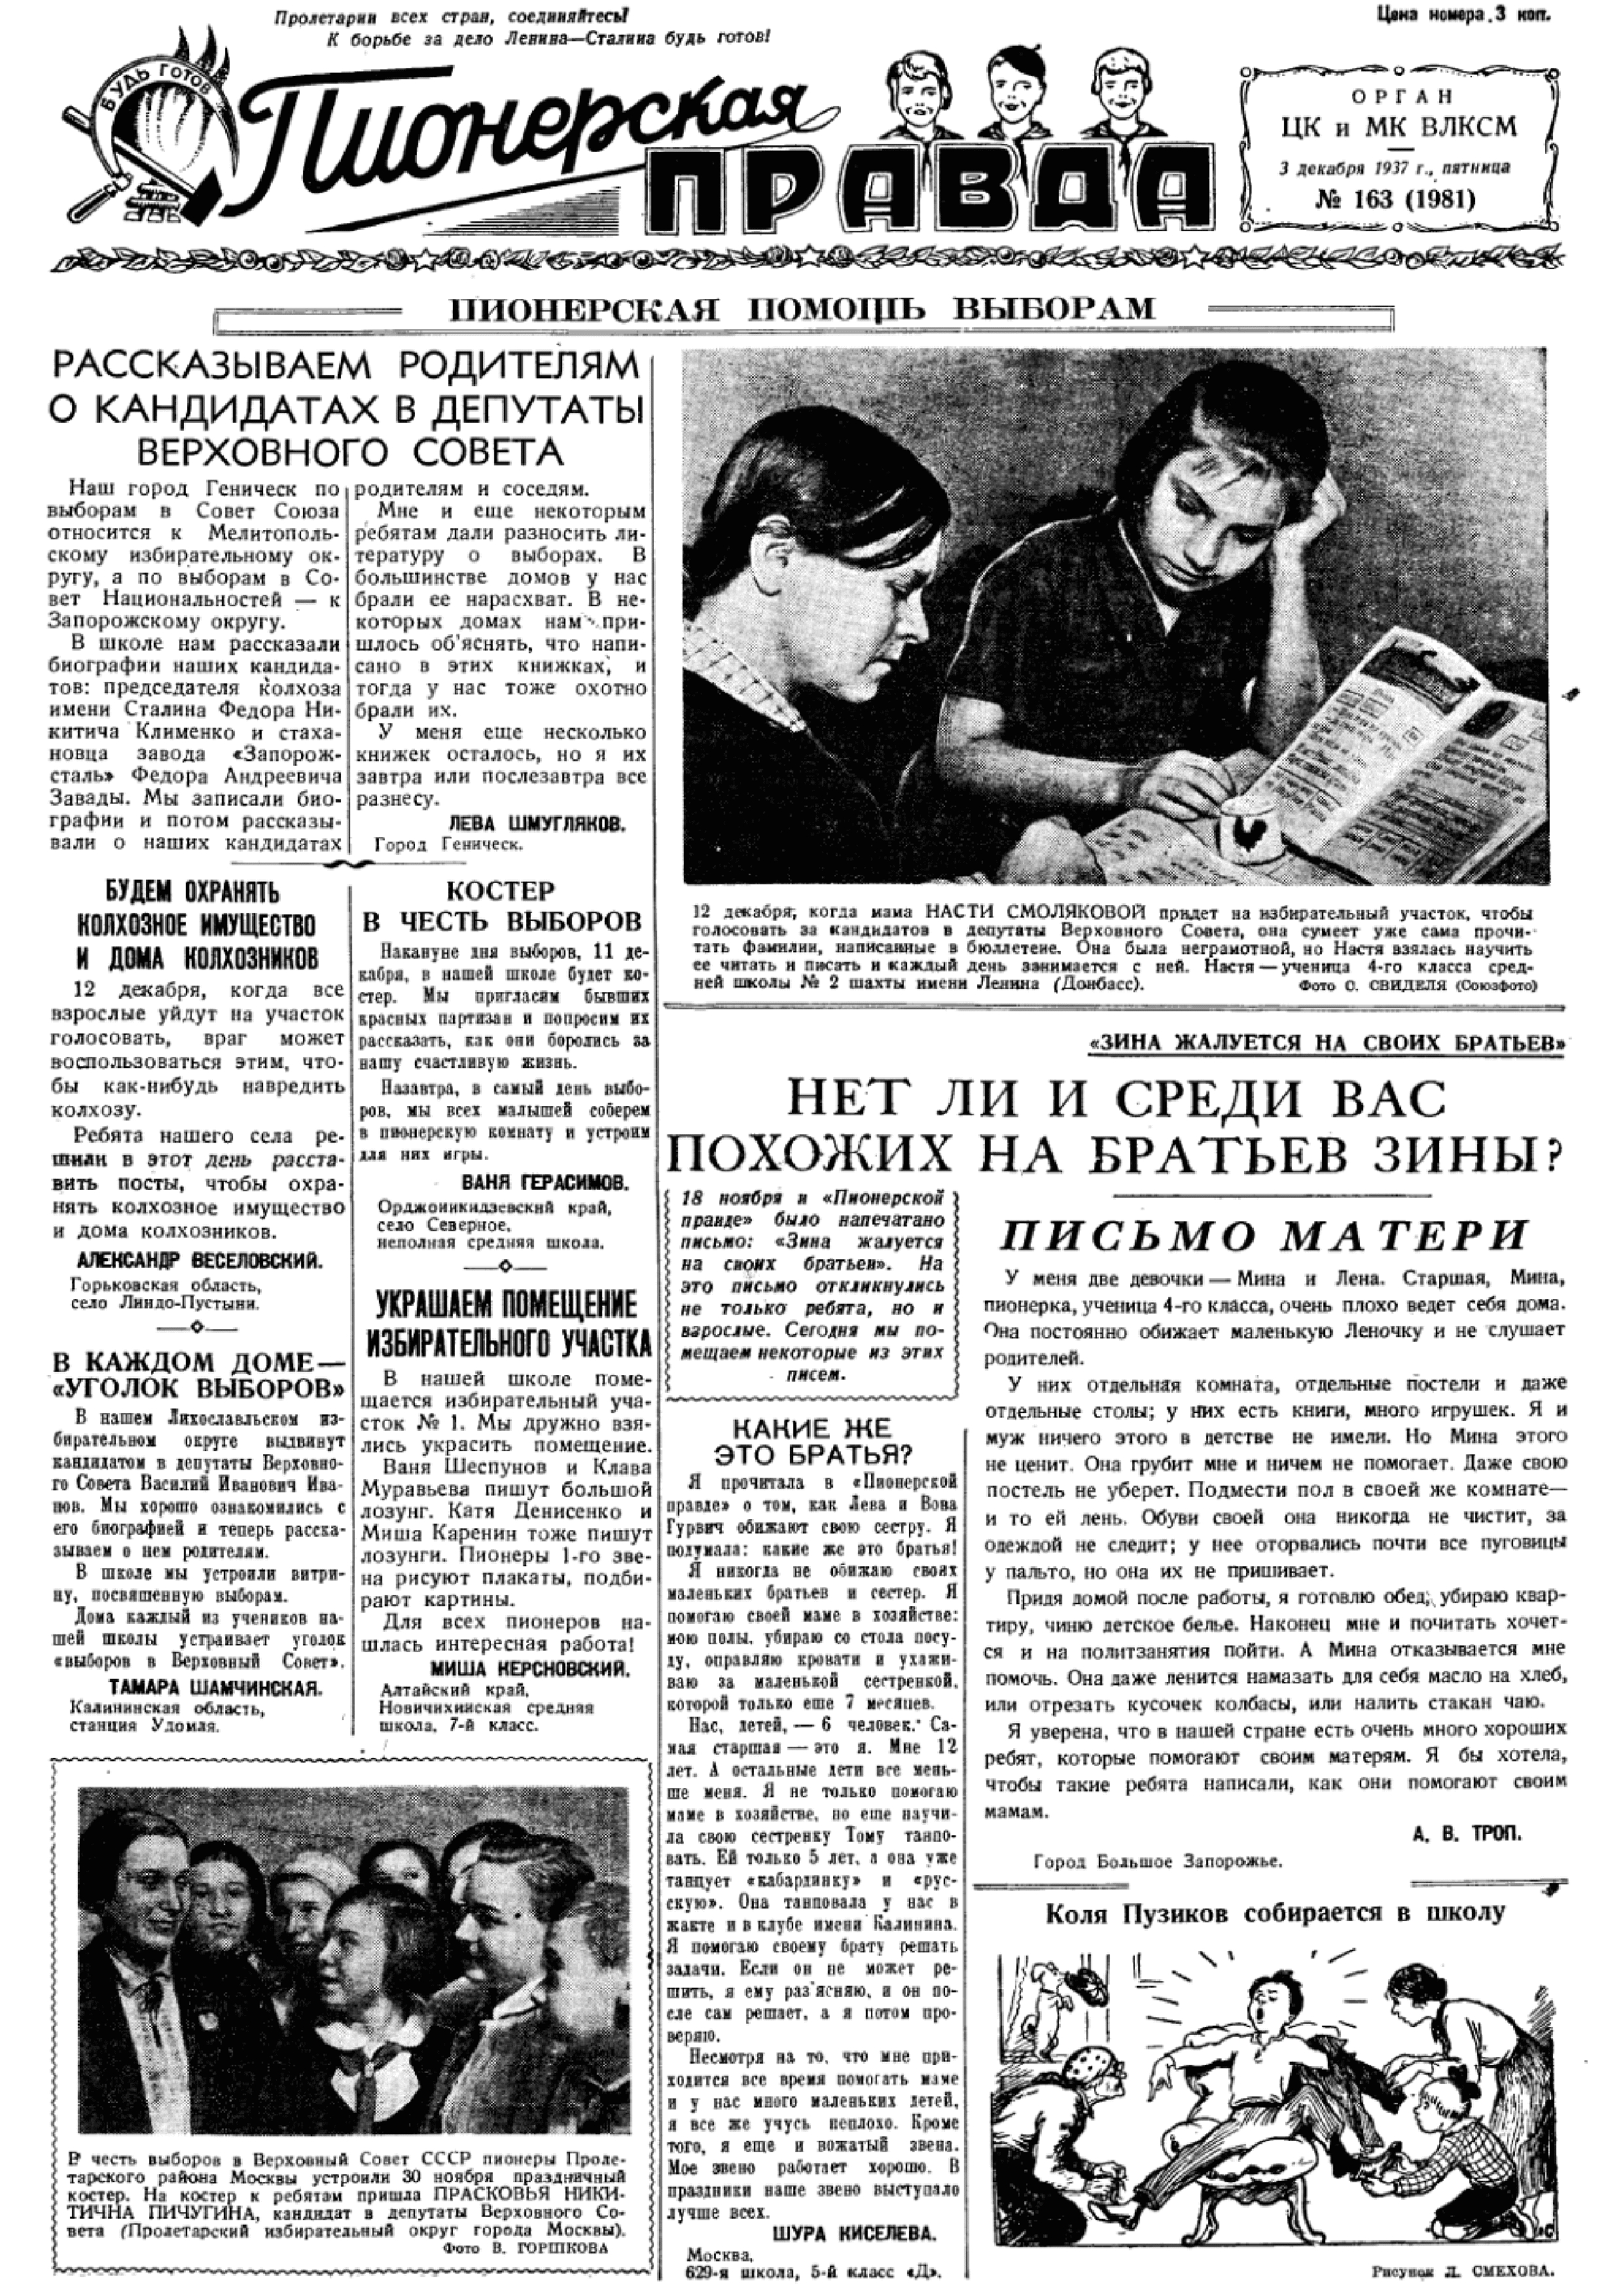 Титульный лист газеты «Пионерская правда» от 3 декабря 1937 года